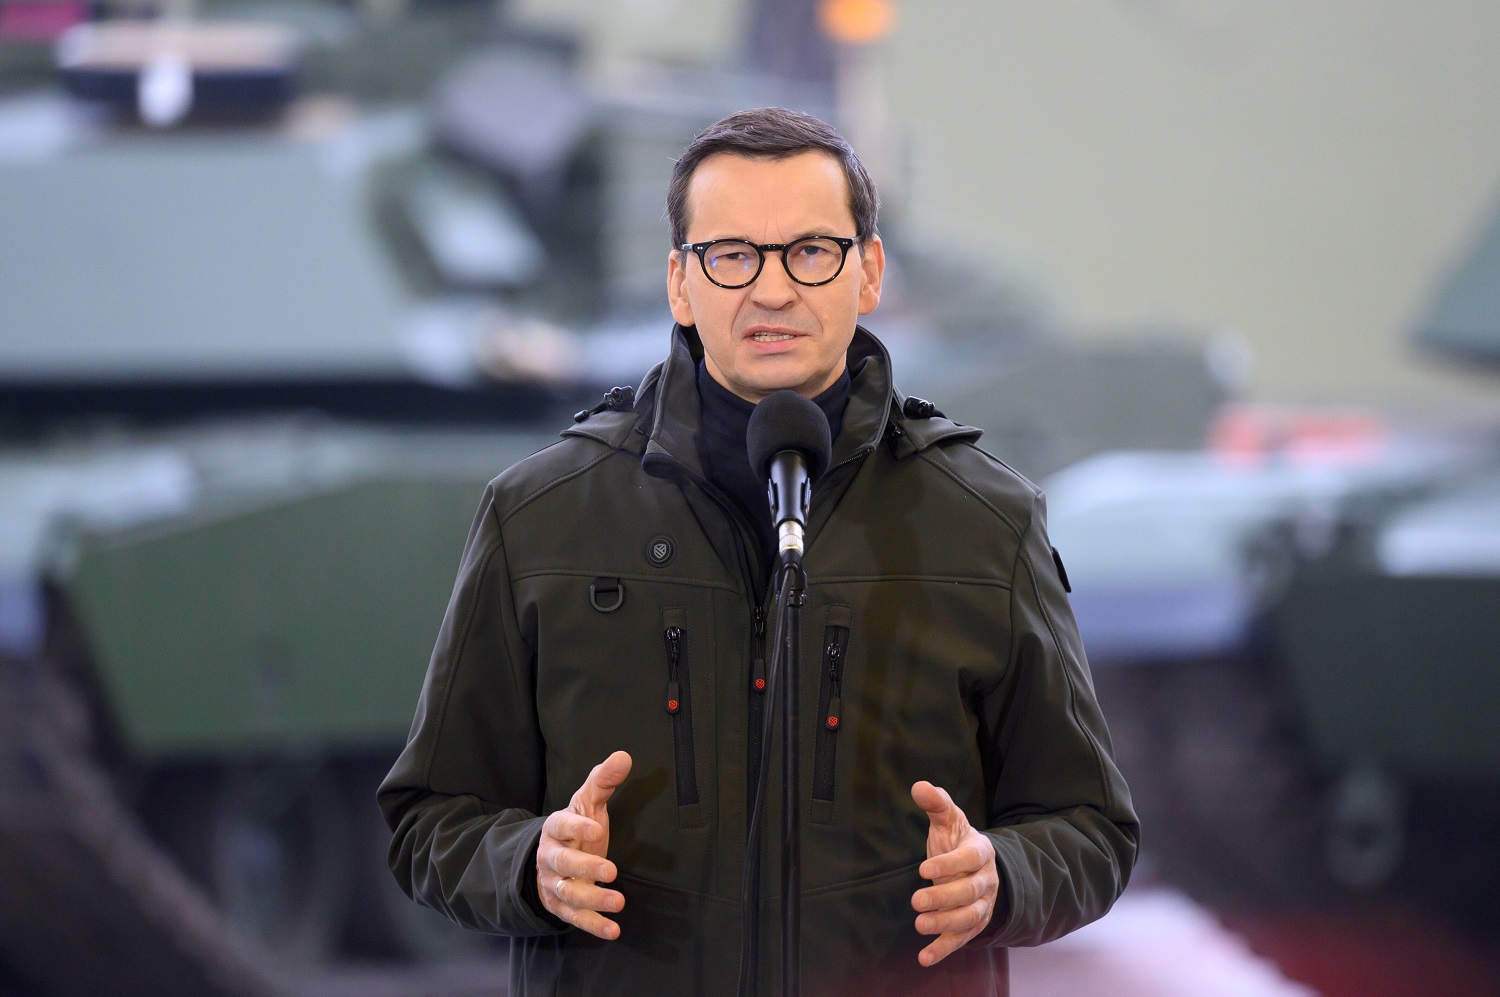 Lenkijos premjeras: Rusijos karas gali ateiti į Berlyną ar Paryžių